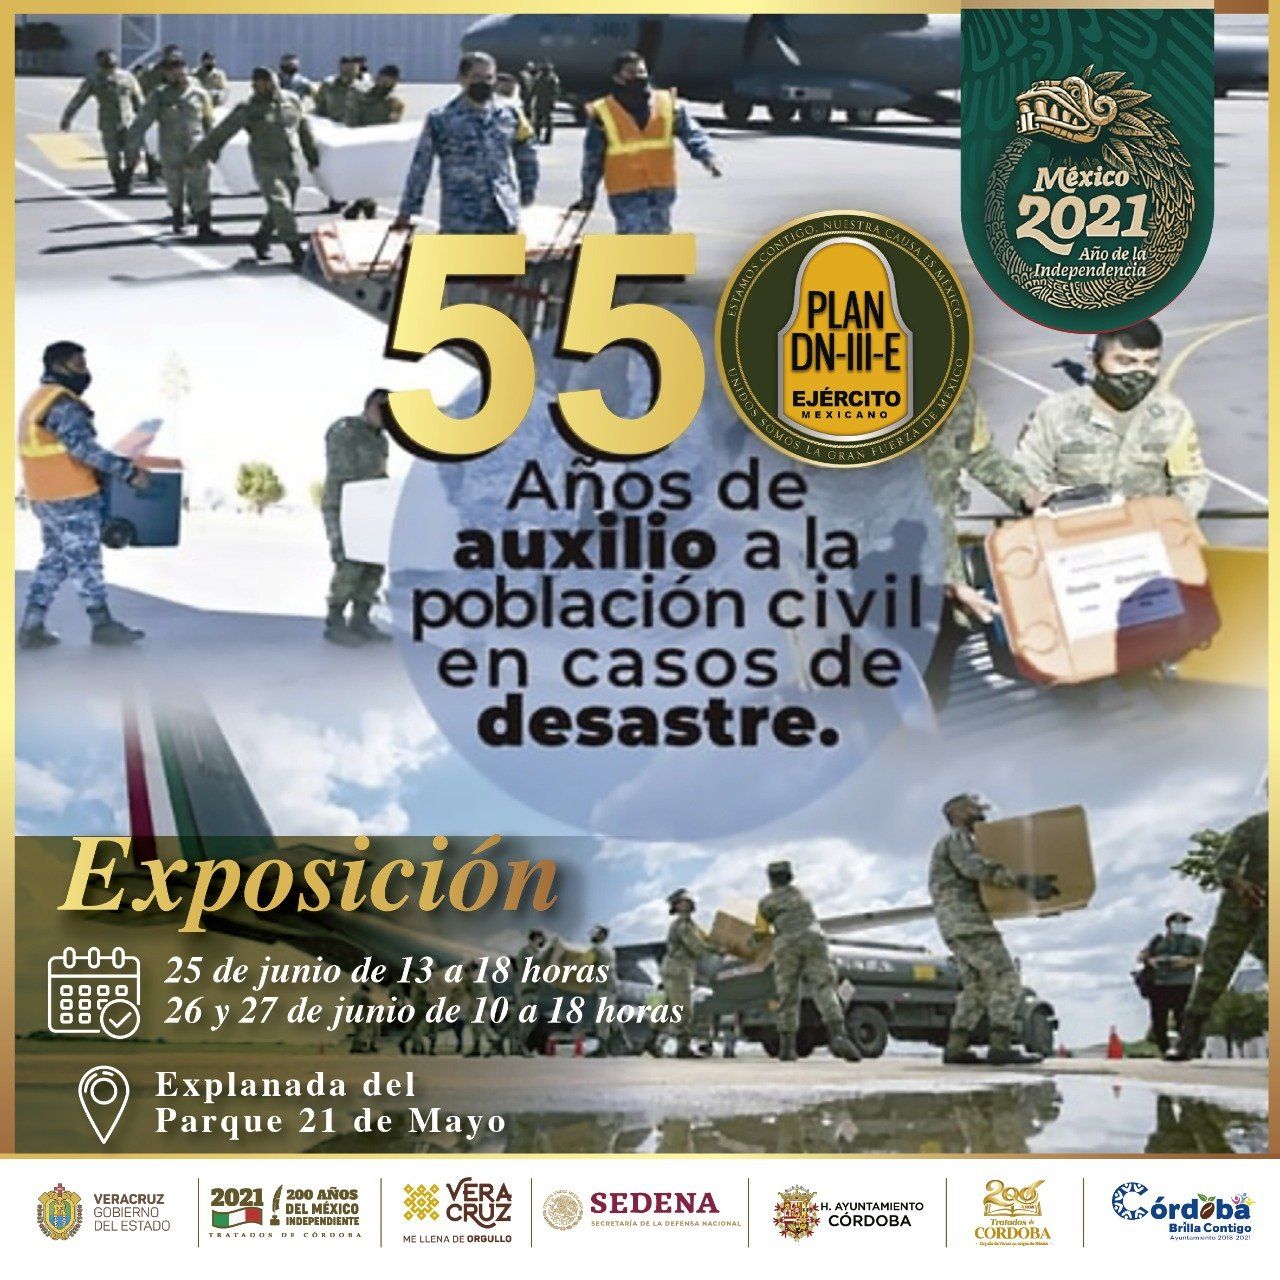 Córdoba será sede de exposición por 55 aniversario del Plan DN-III-E